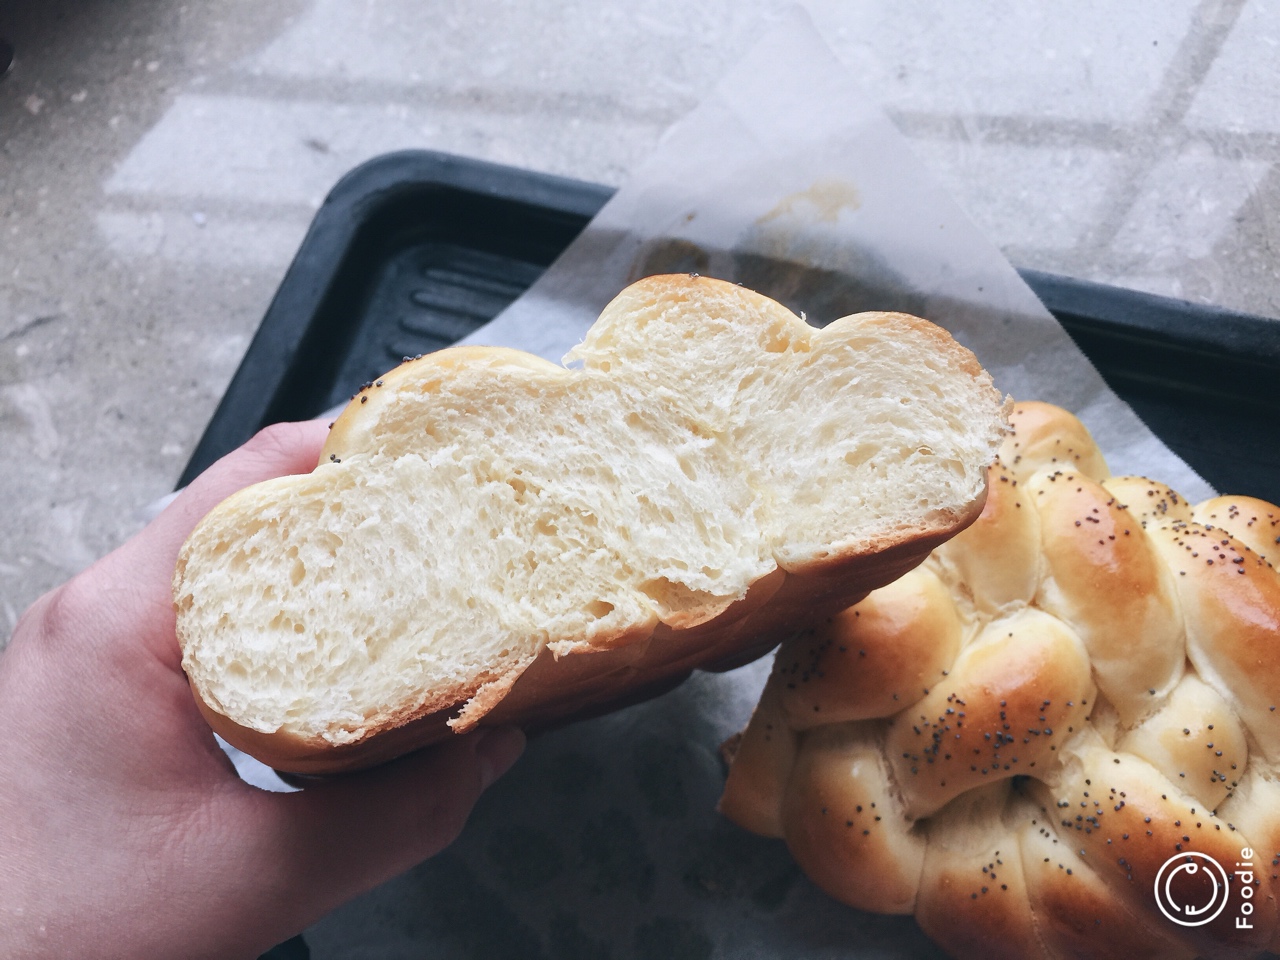 优雅烘焙 2015：犹太人的大辫子面包手工揉面版